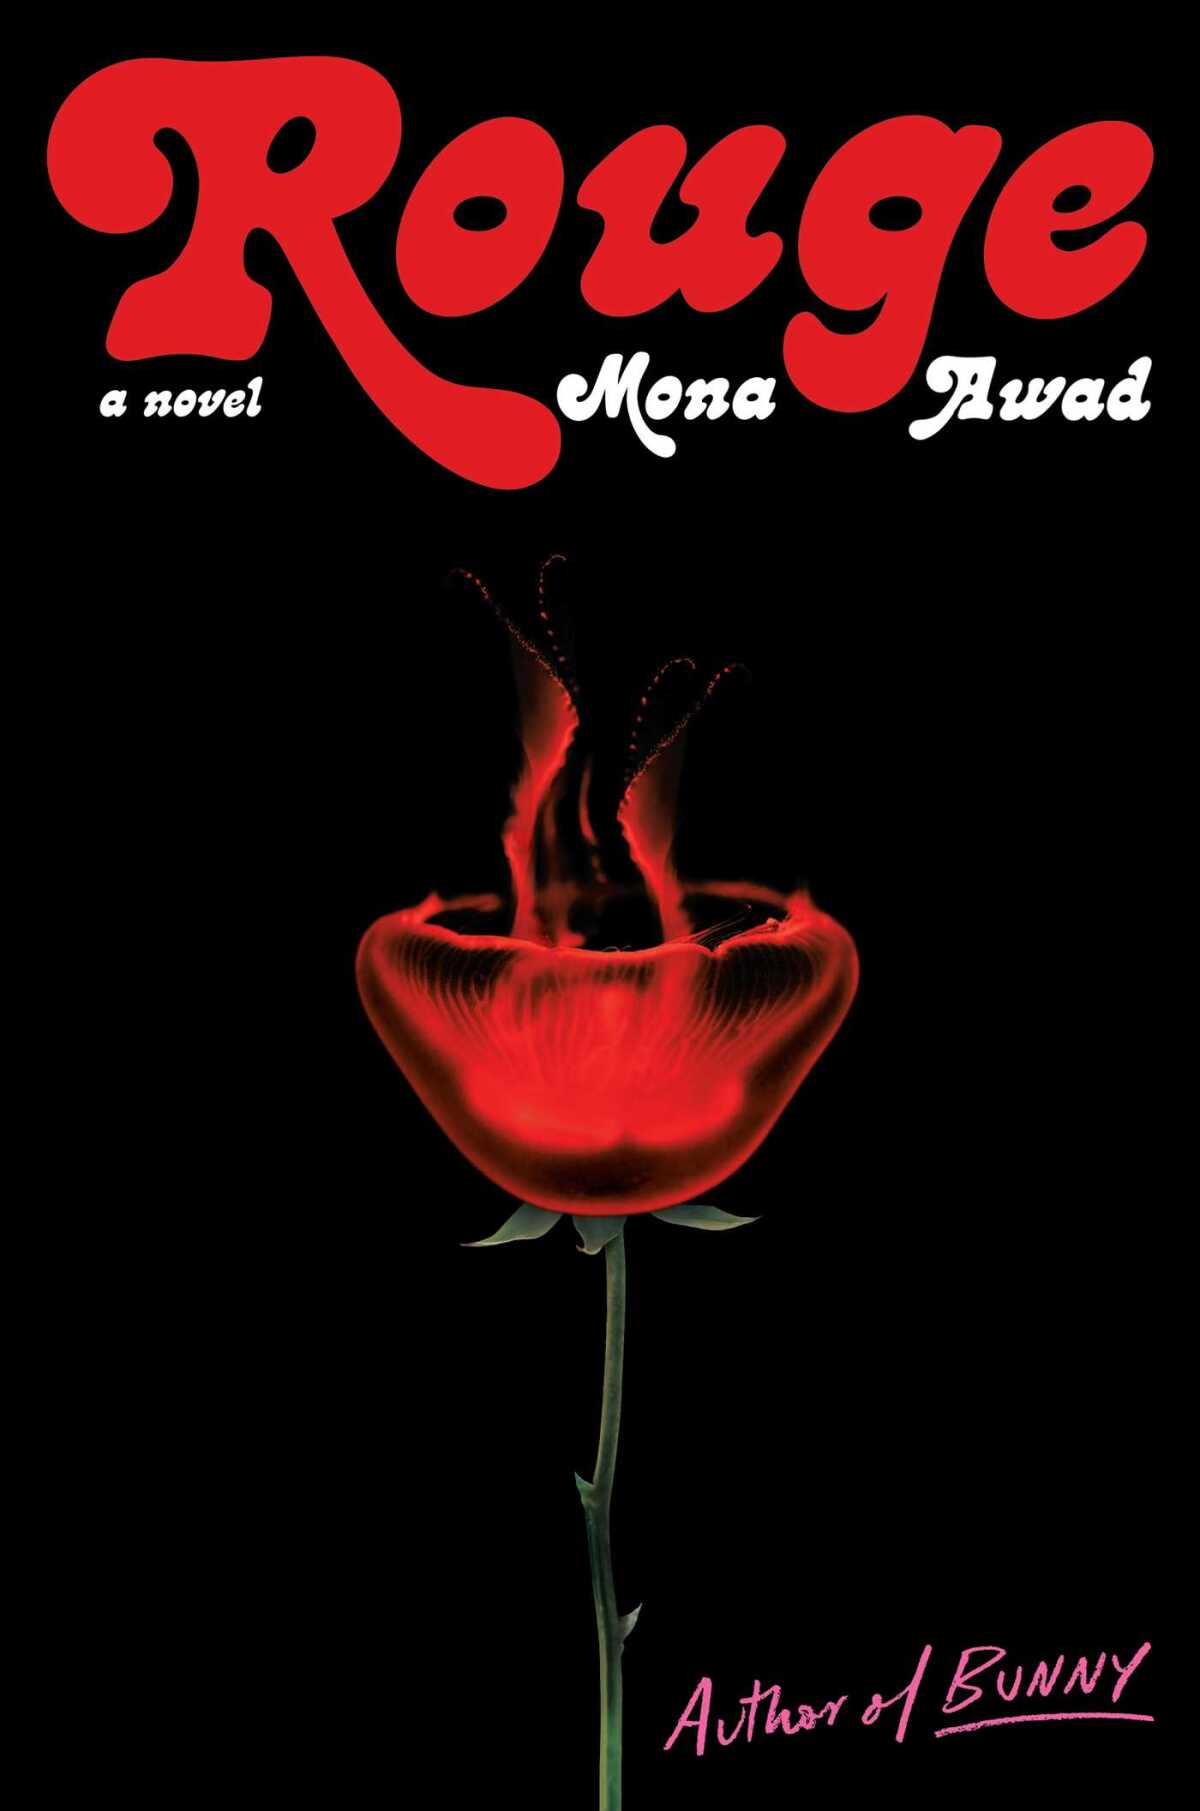 "Rouge" by Mona Awad is set in La Jolla.